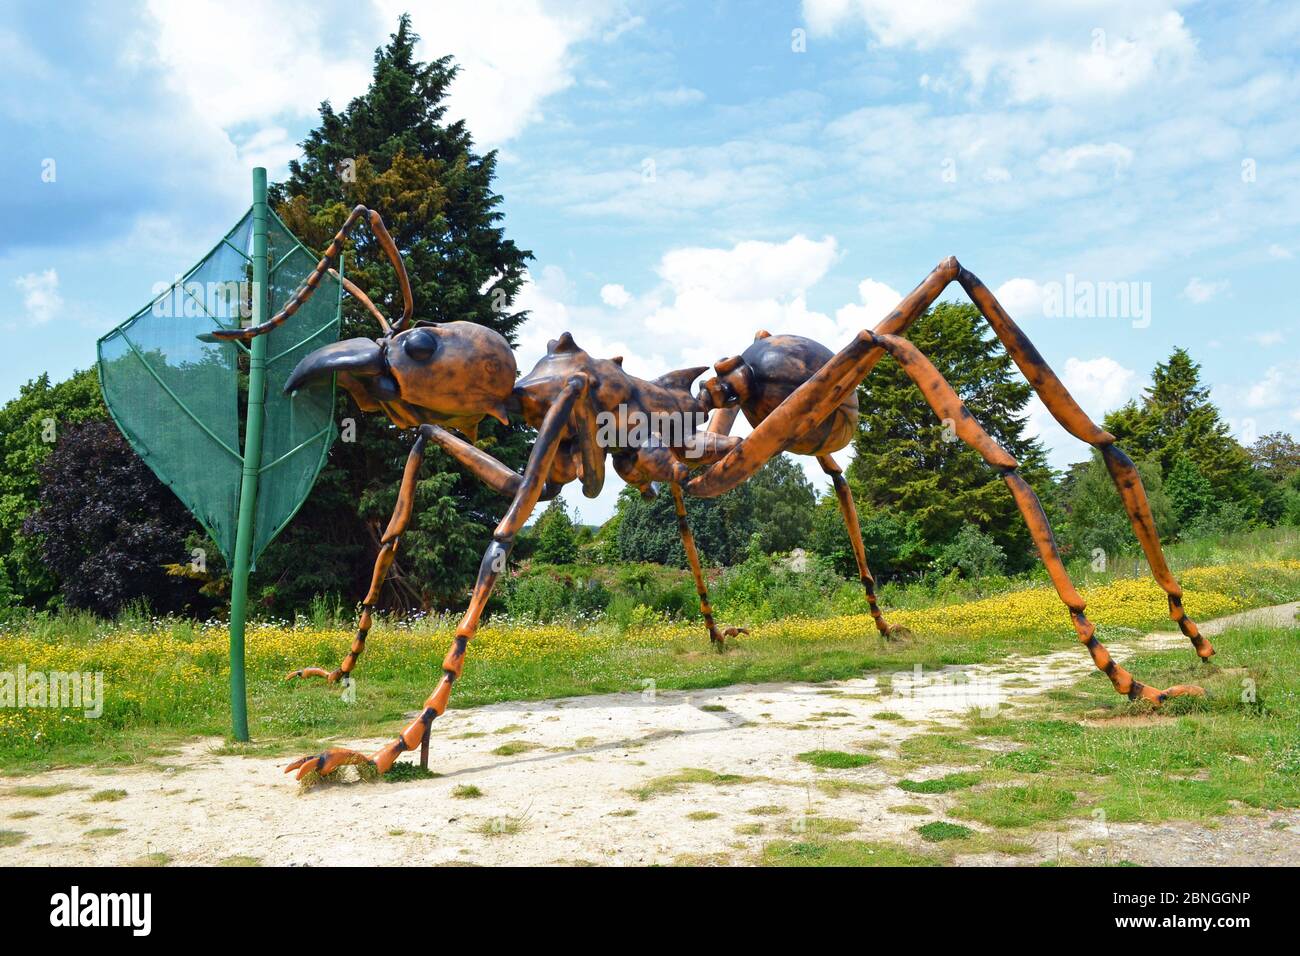 Une sculpture Ant géante à Butterfly World, St Albans, Hertfordshire, Royaume-Uni. L'attraction a fermé en décembre 2015. Banque D'Images